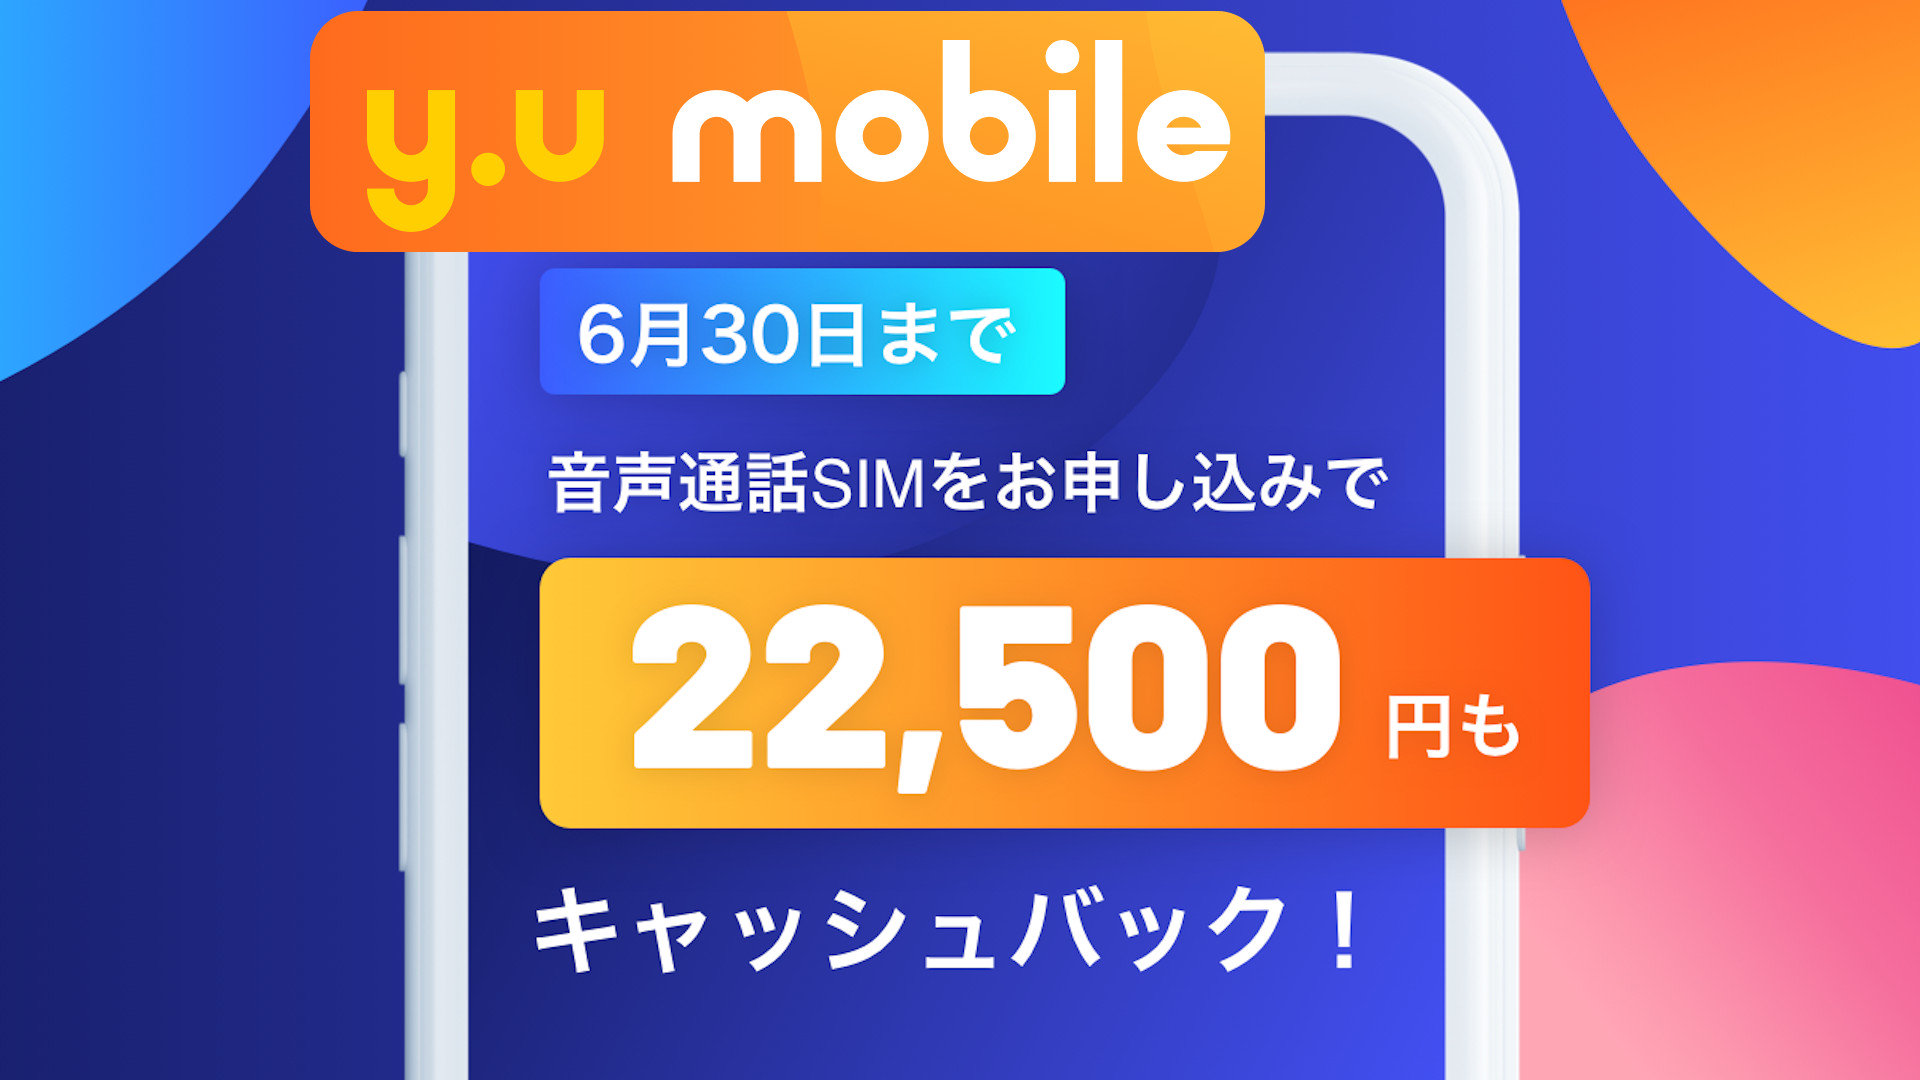 y.u mobileは6月まで22500円キャッシュバック中